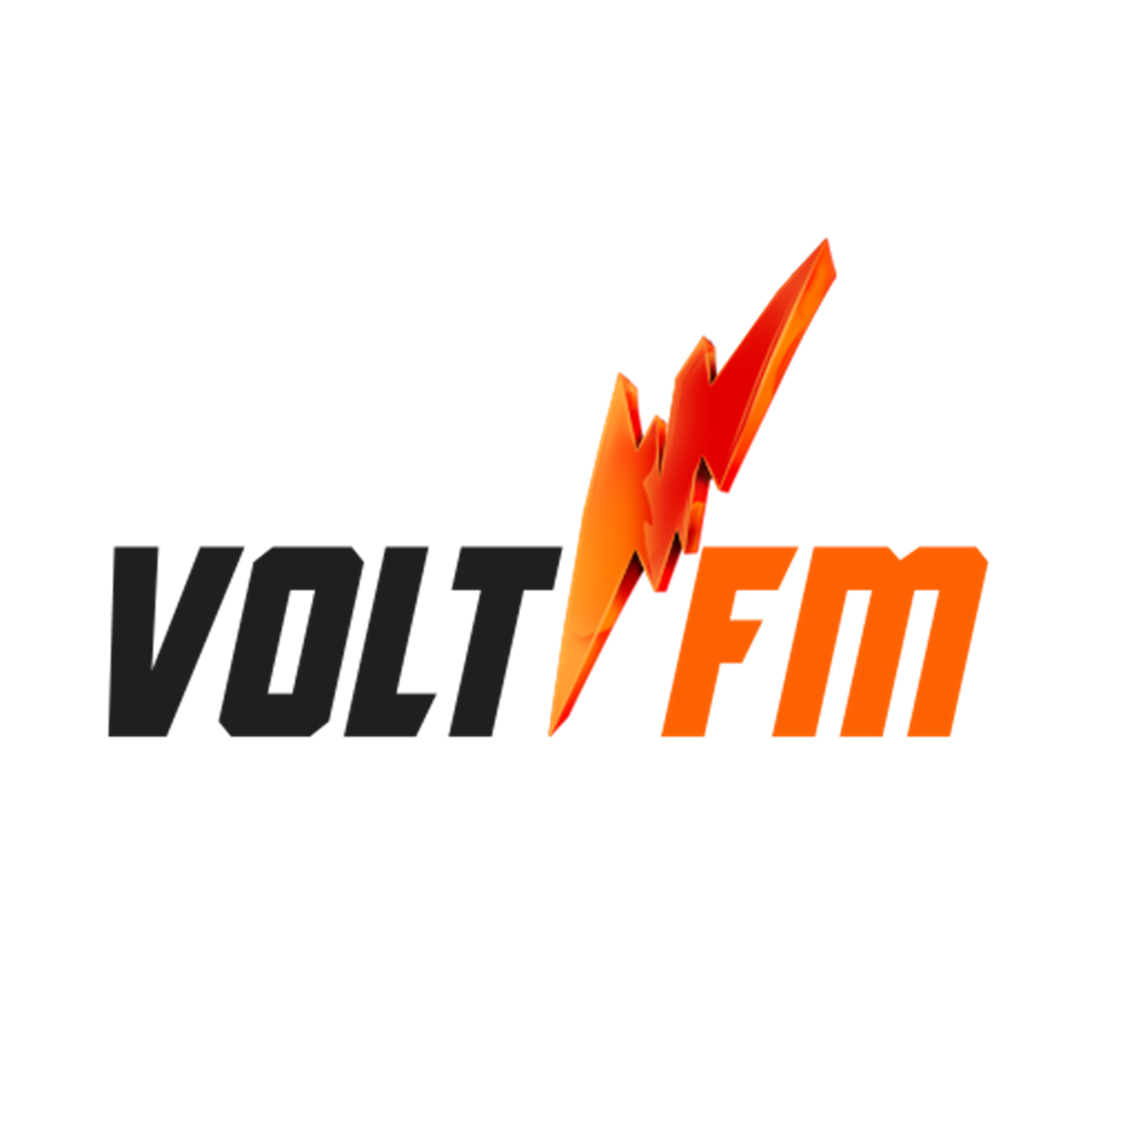 Volt FM